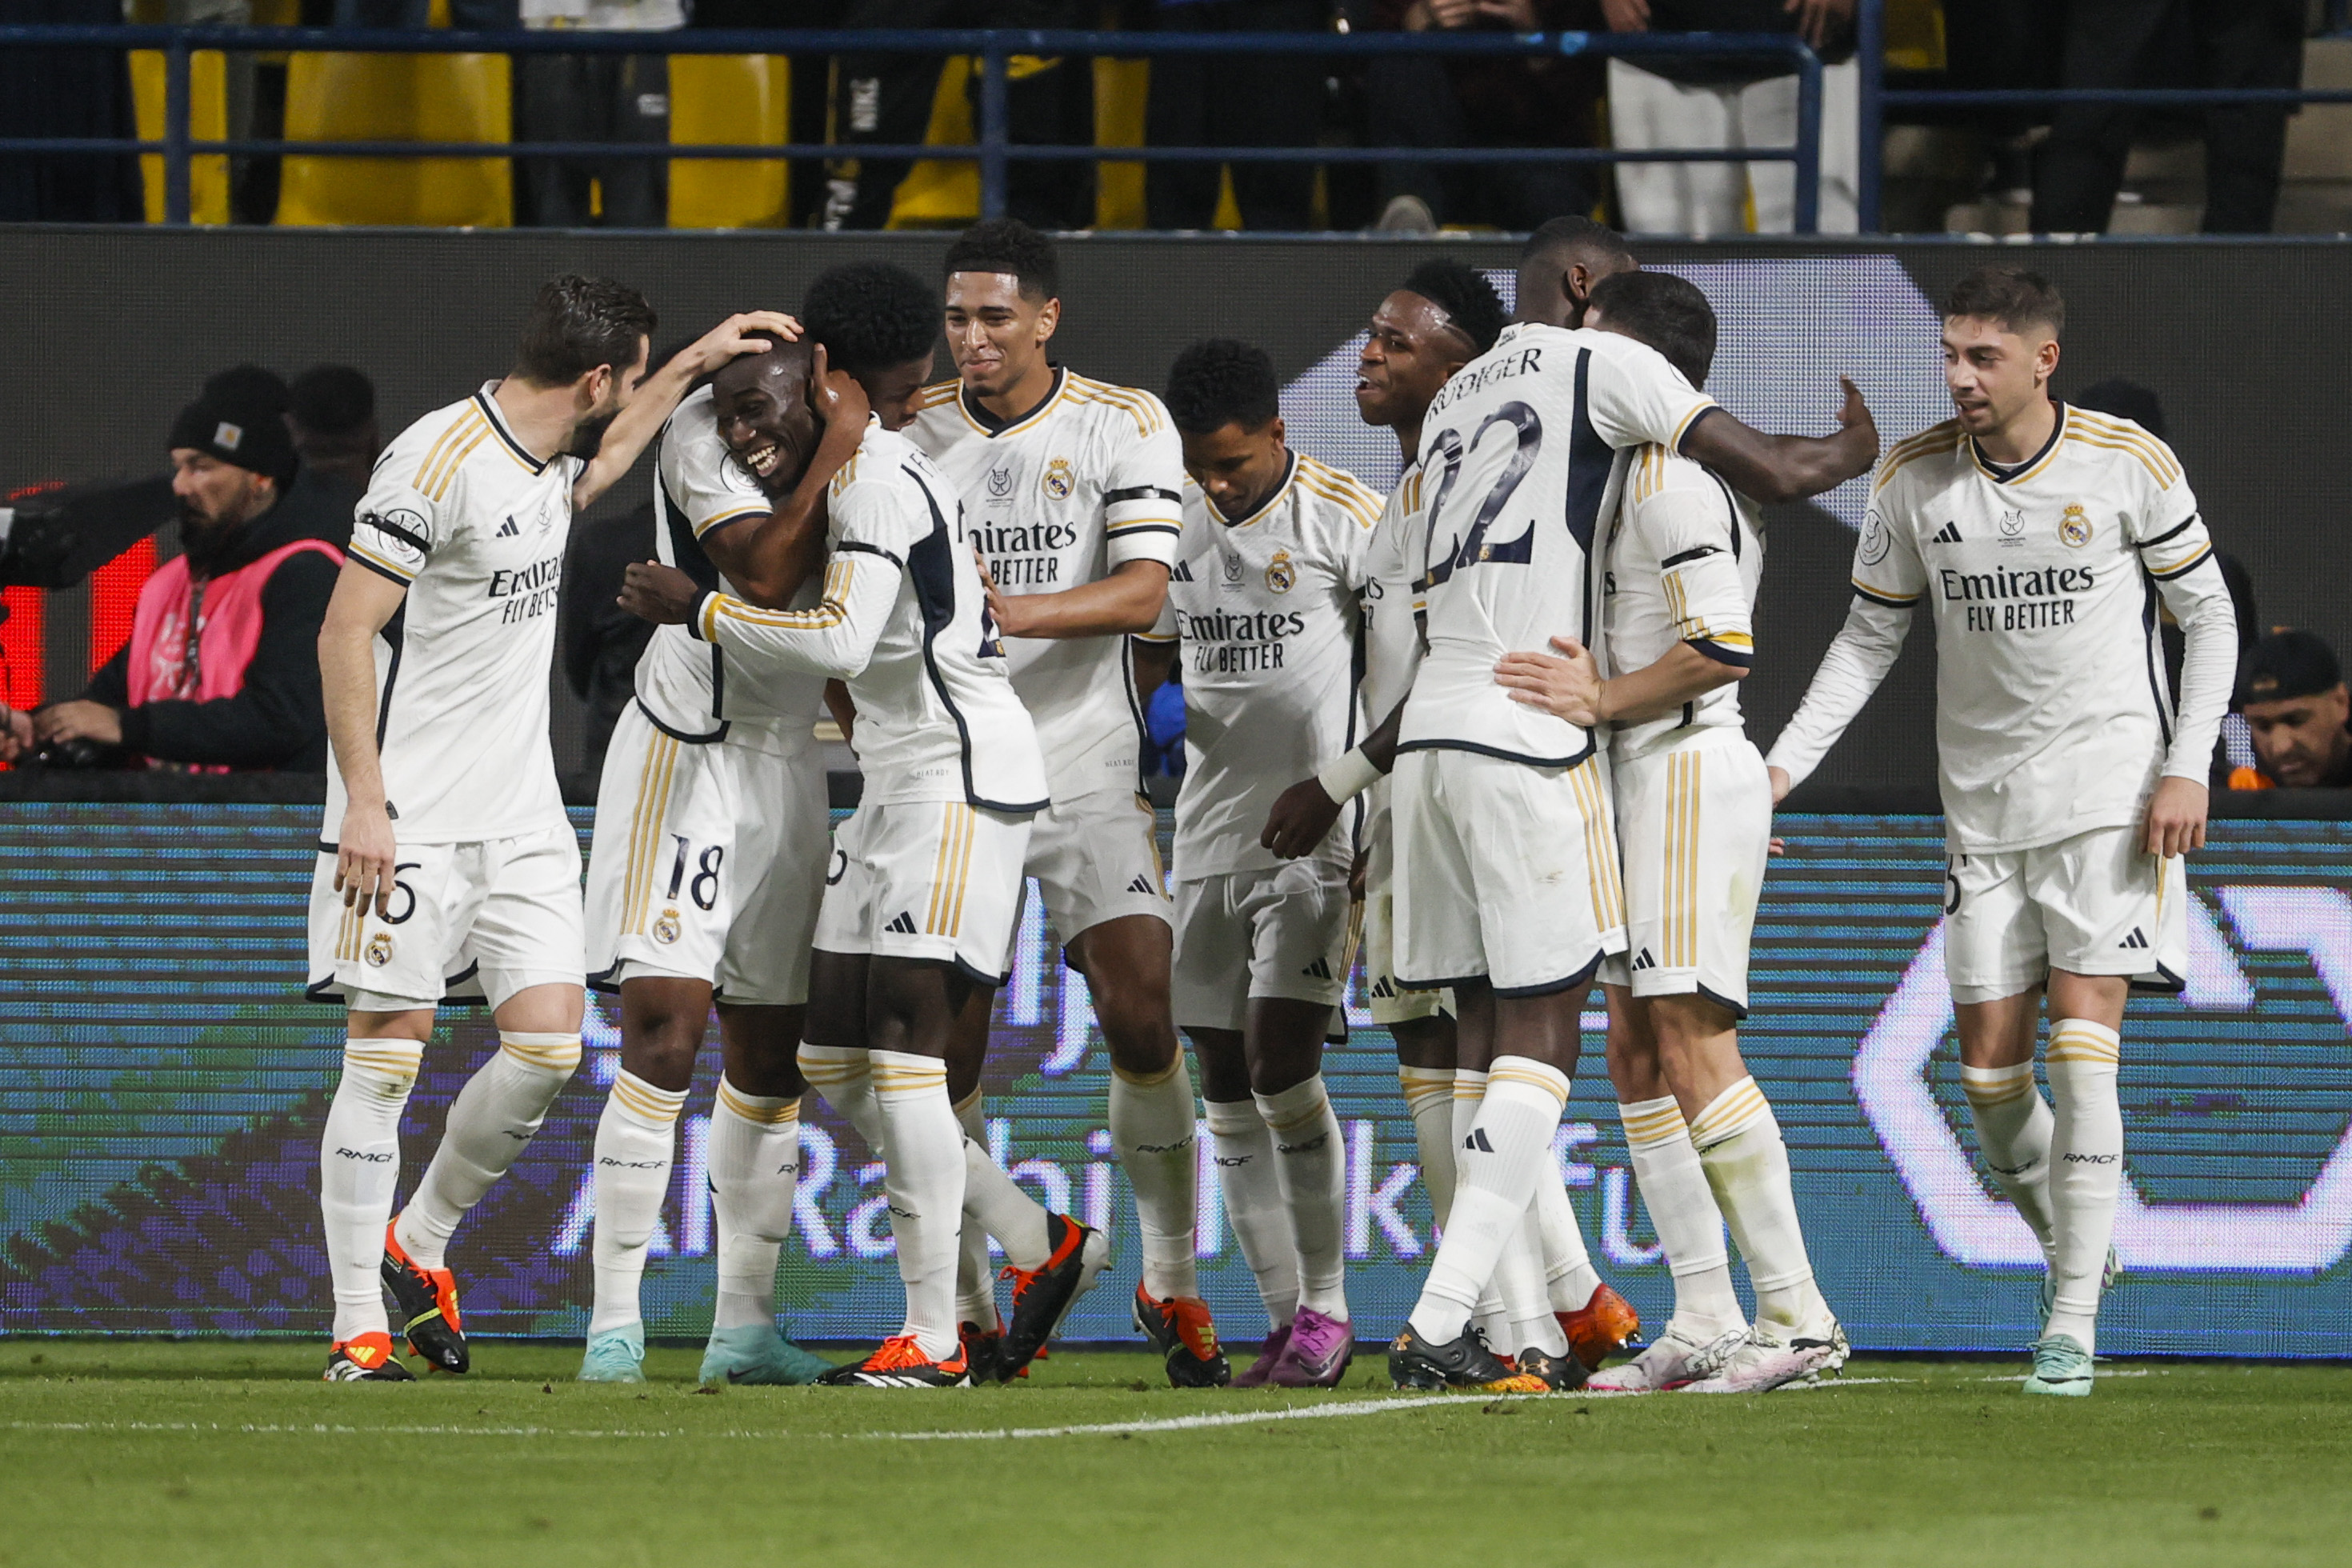 El Real Madrid, a la final de la Supercopa de España al eliminar al Atlético en un partidazo (5-3)